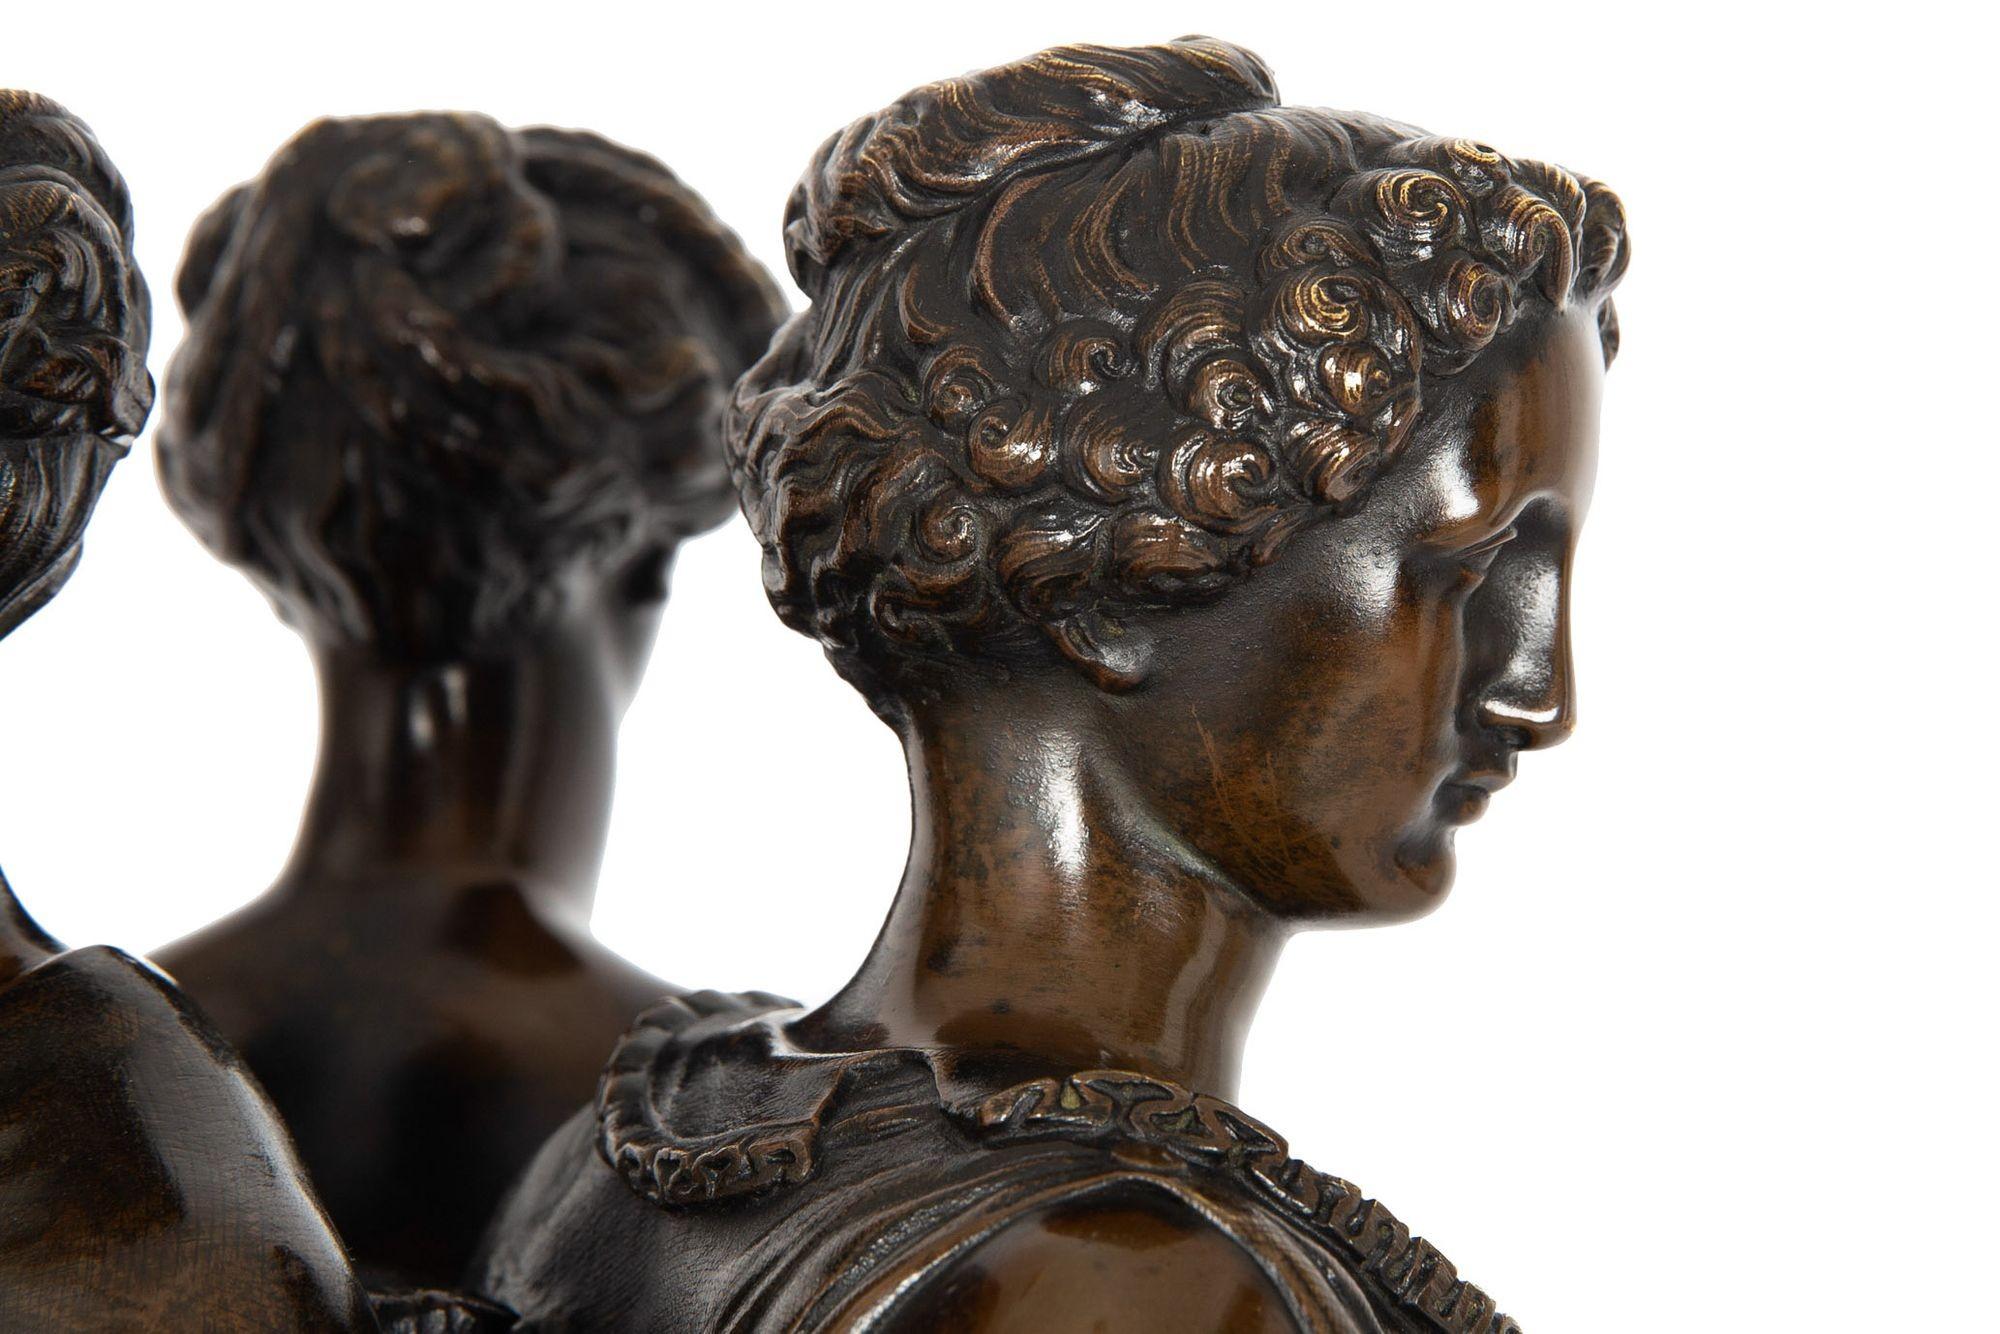 French Antique Bronze Sculpture “Three Graces” after Germain Pilon For Sale 8